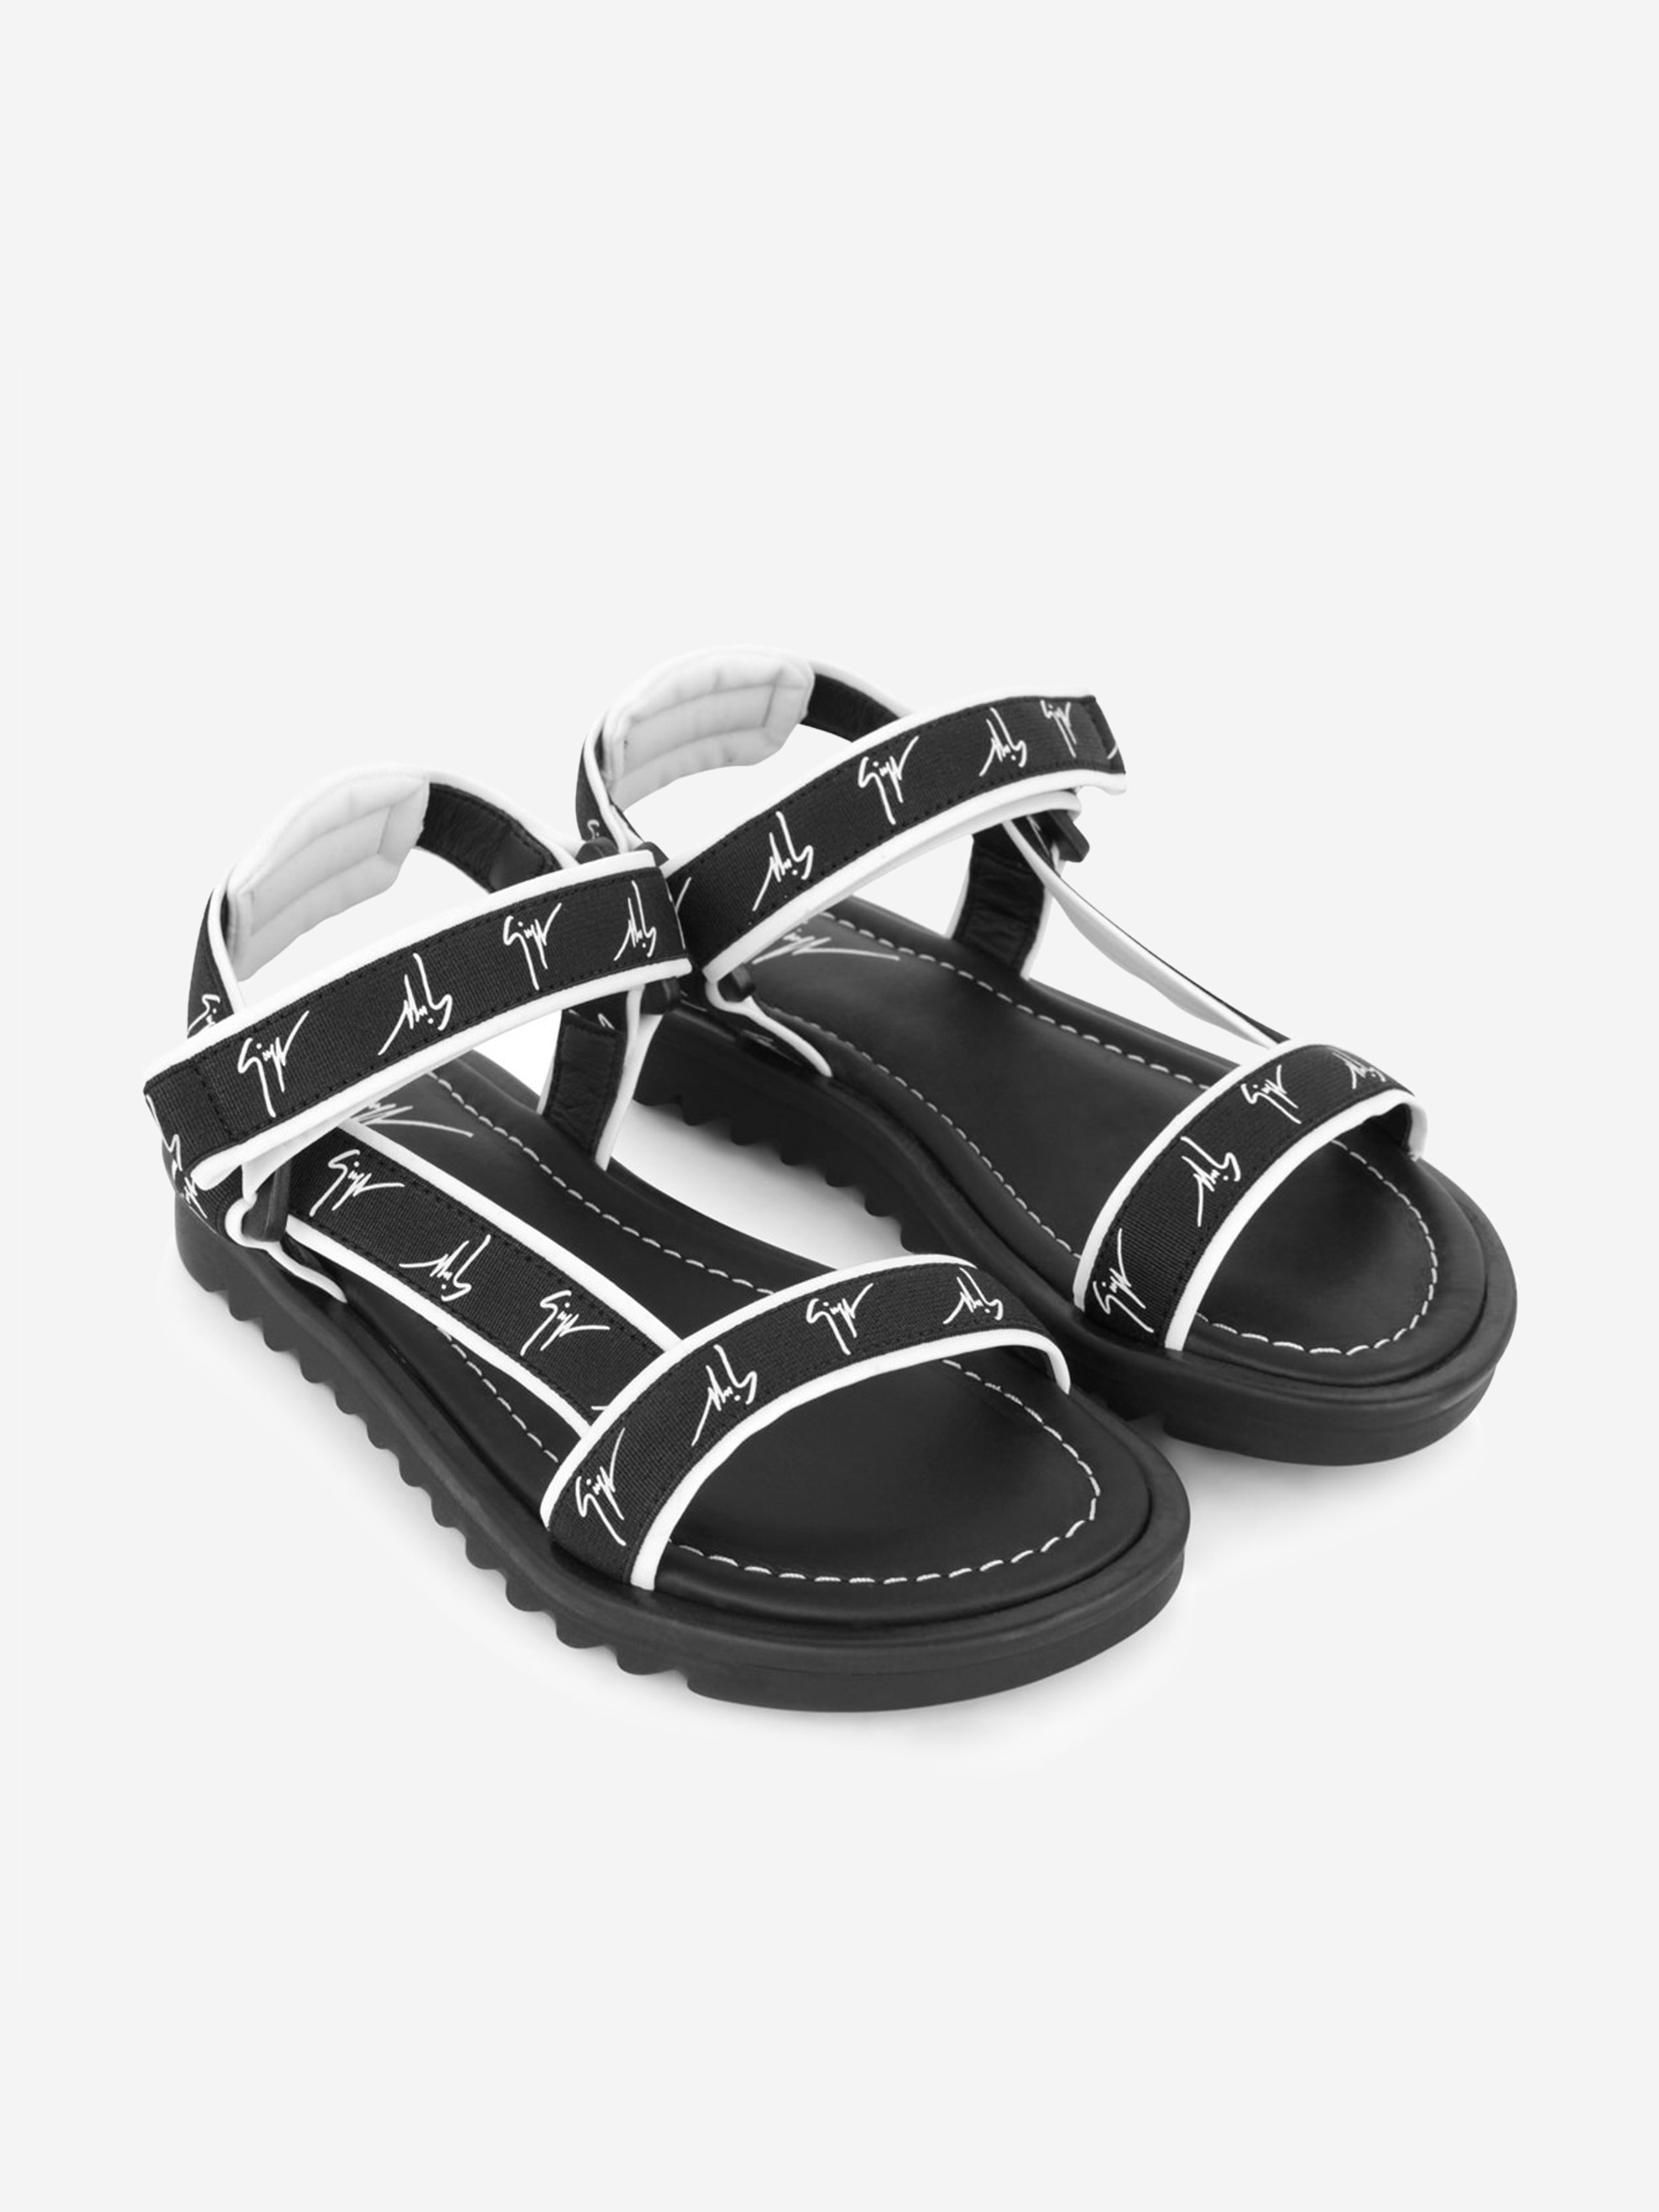 Giuseppe Junior Babies' Logo Sandals Eu 19 Uk 3 Black